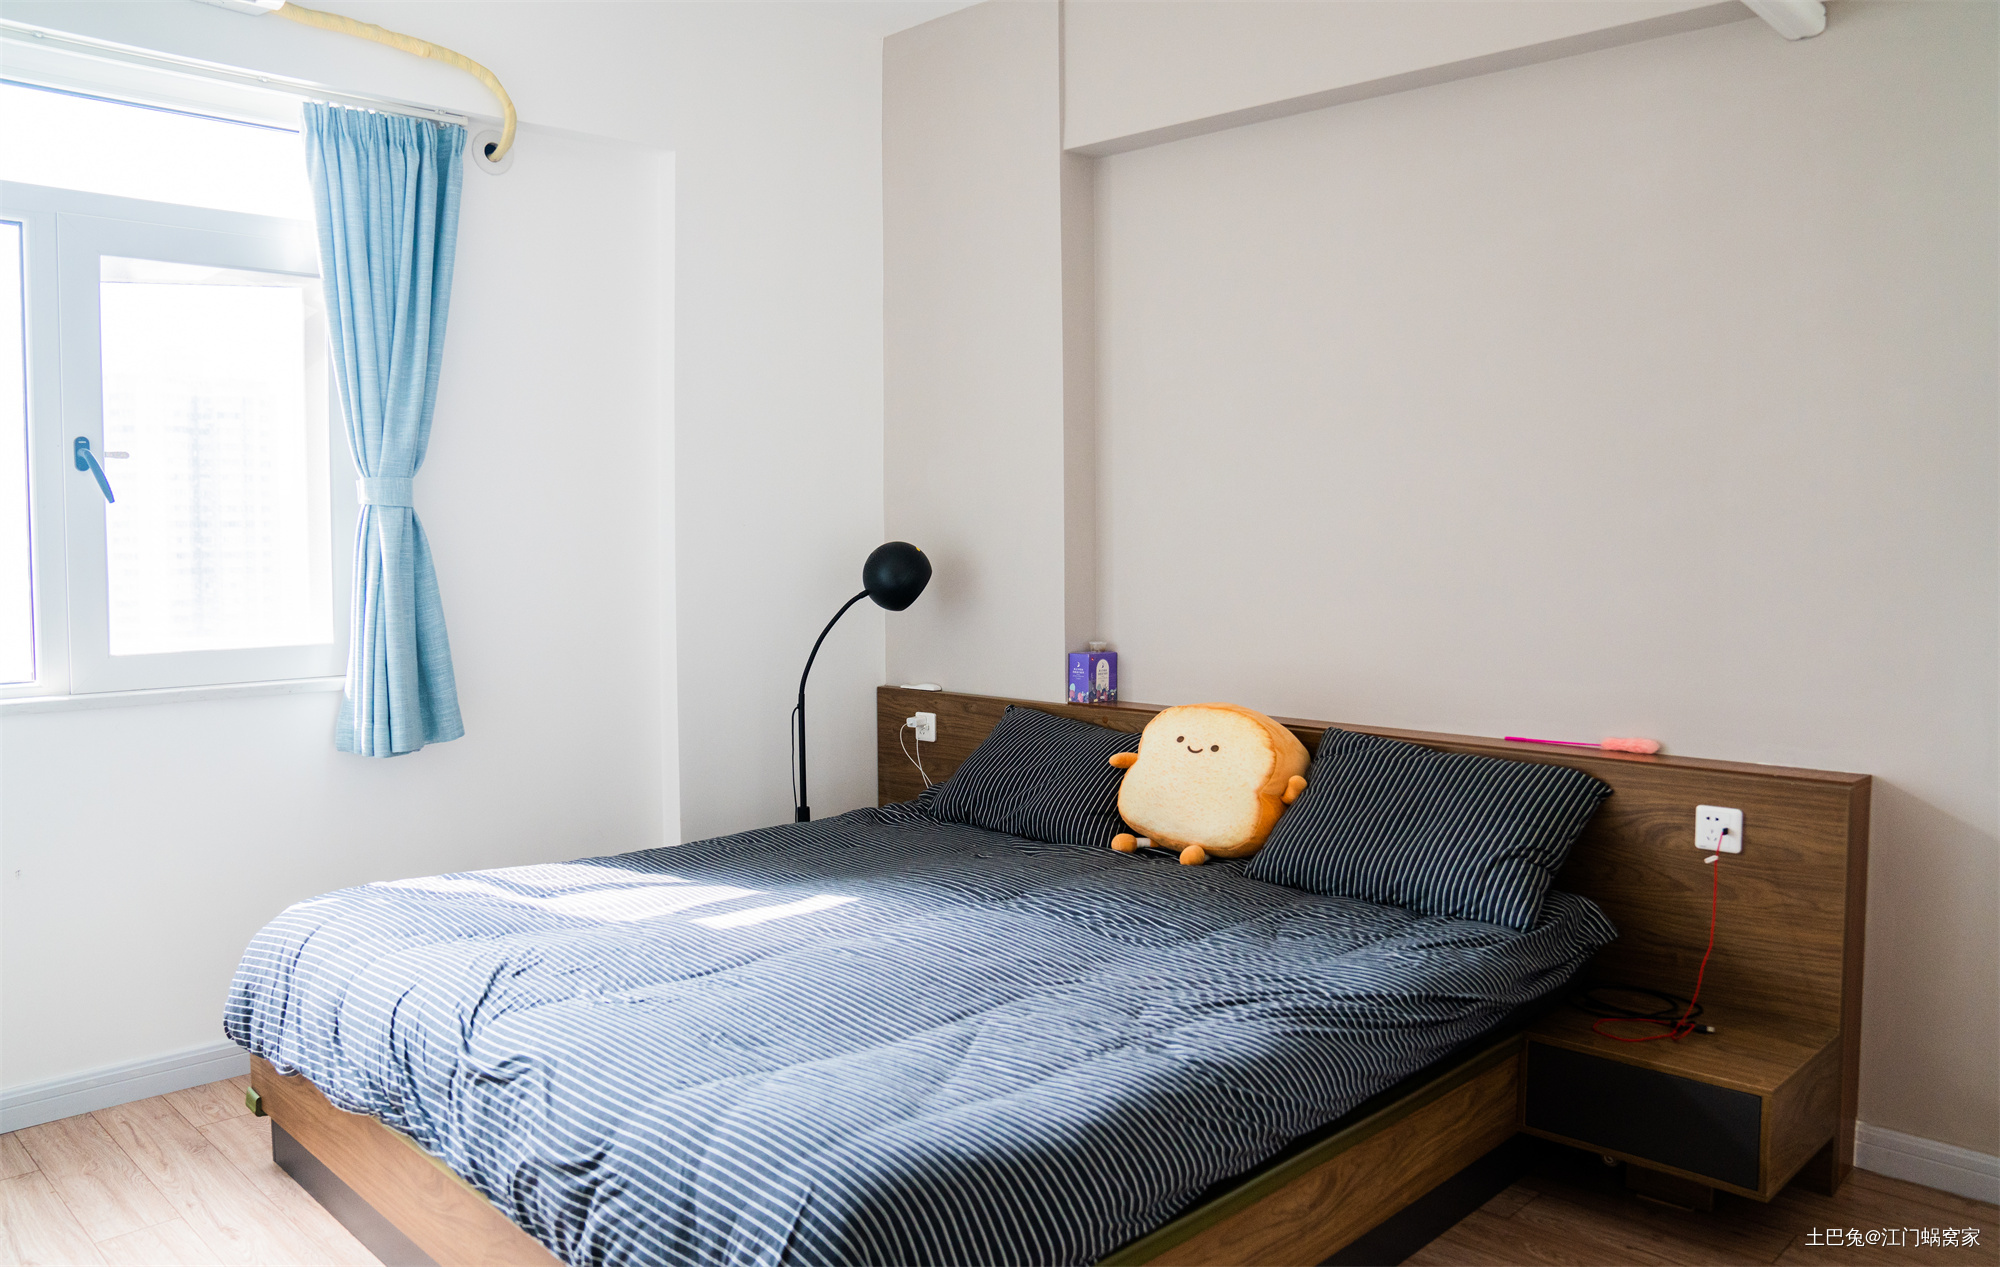 92㎡日式增加收纳方便做卫生日式卧室设计图片赏析